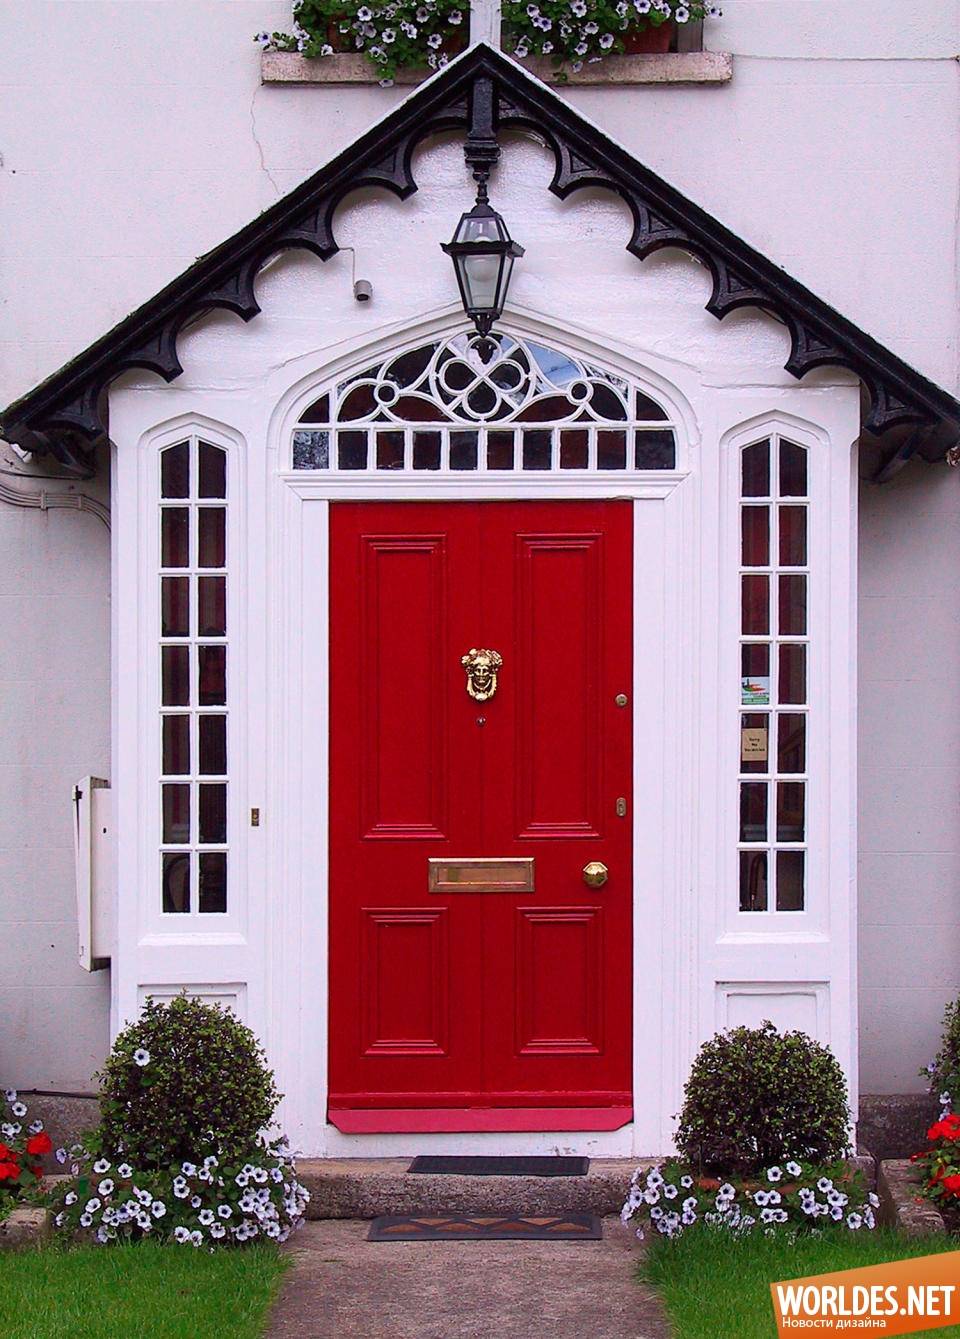 дизайн дверей, декоративный дизайн, декоративный дизайн дверей, двери, оригинальные двери, интересные двери, коллекция интересных дверей, современный двери, входные двери для дома